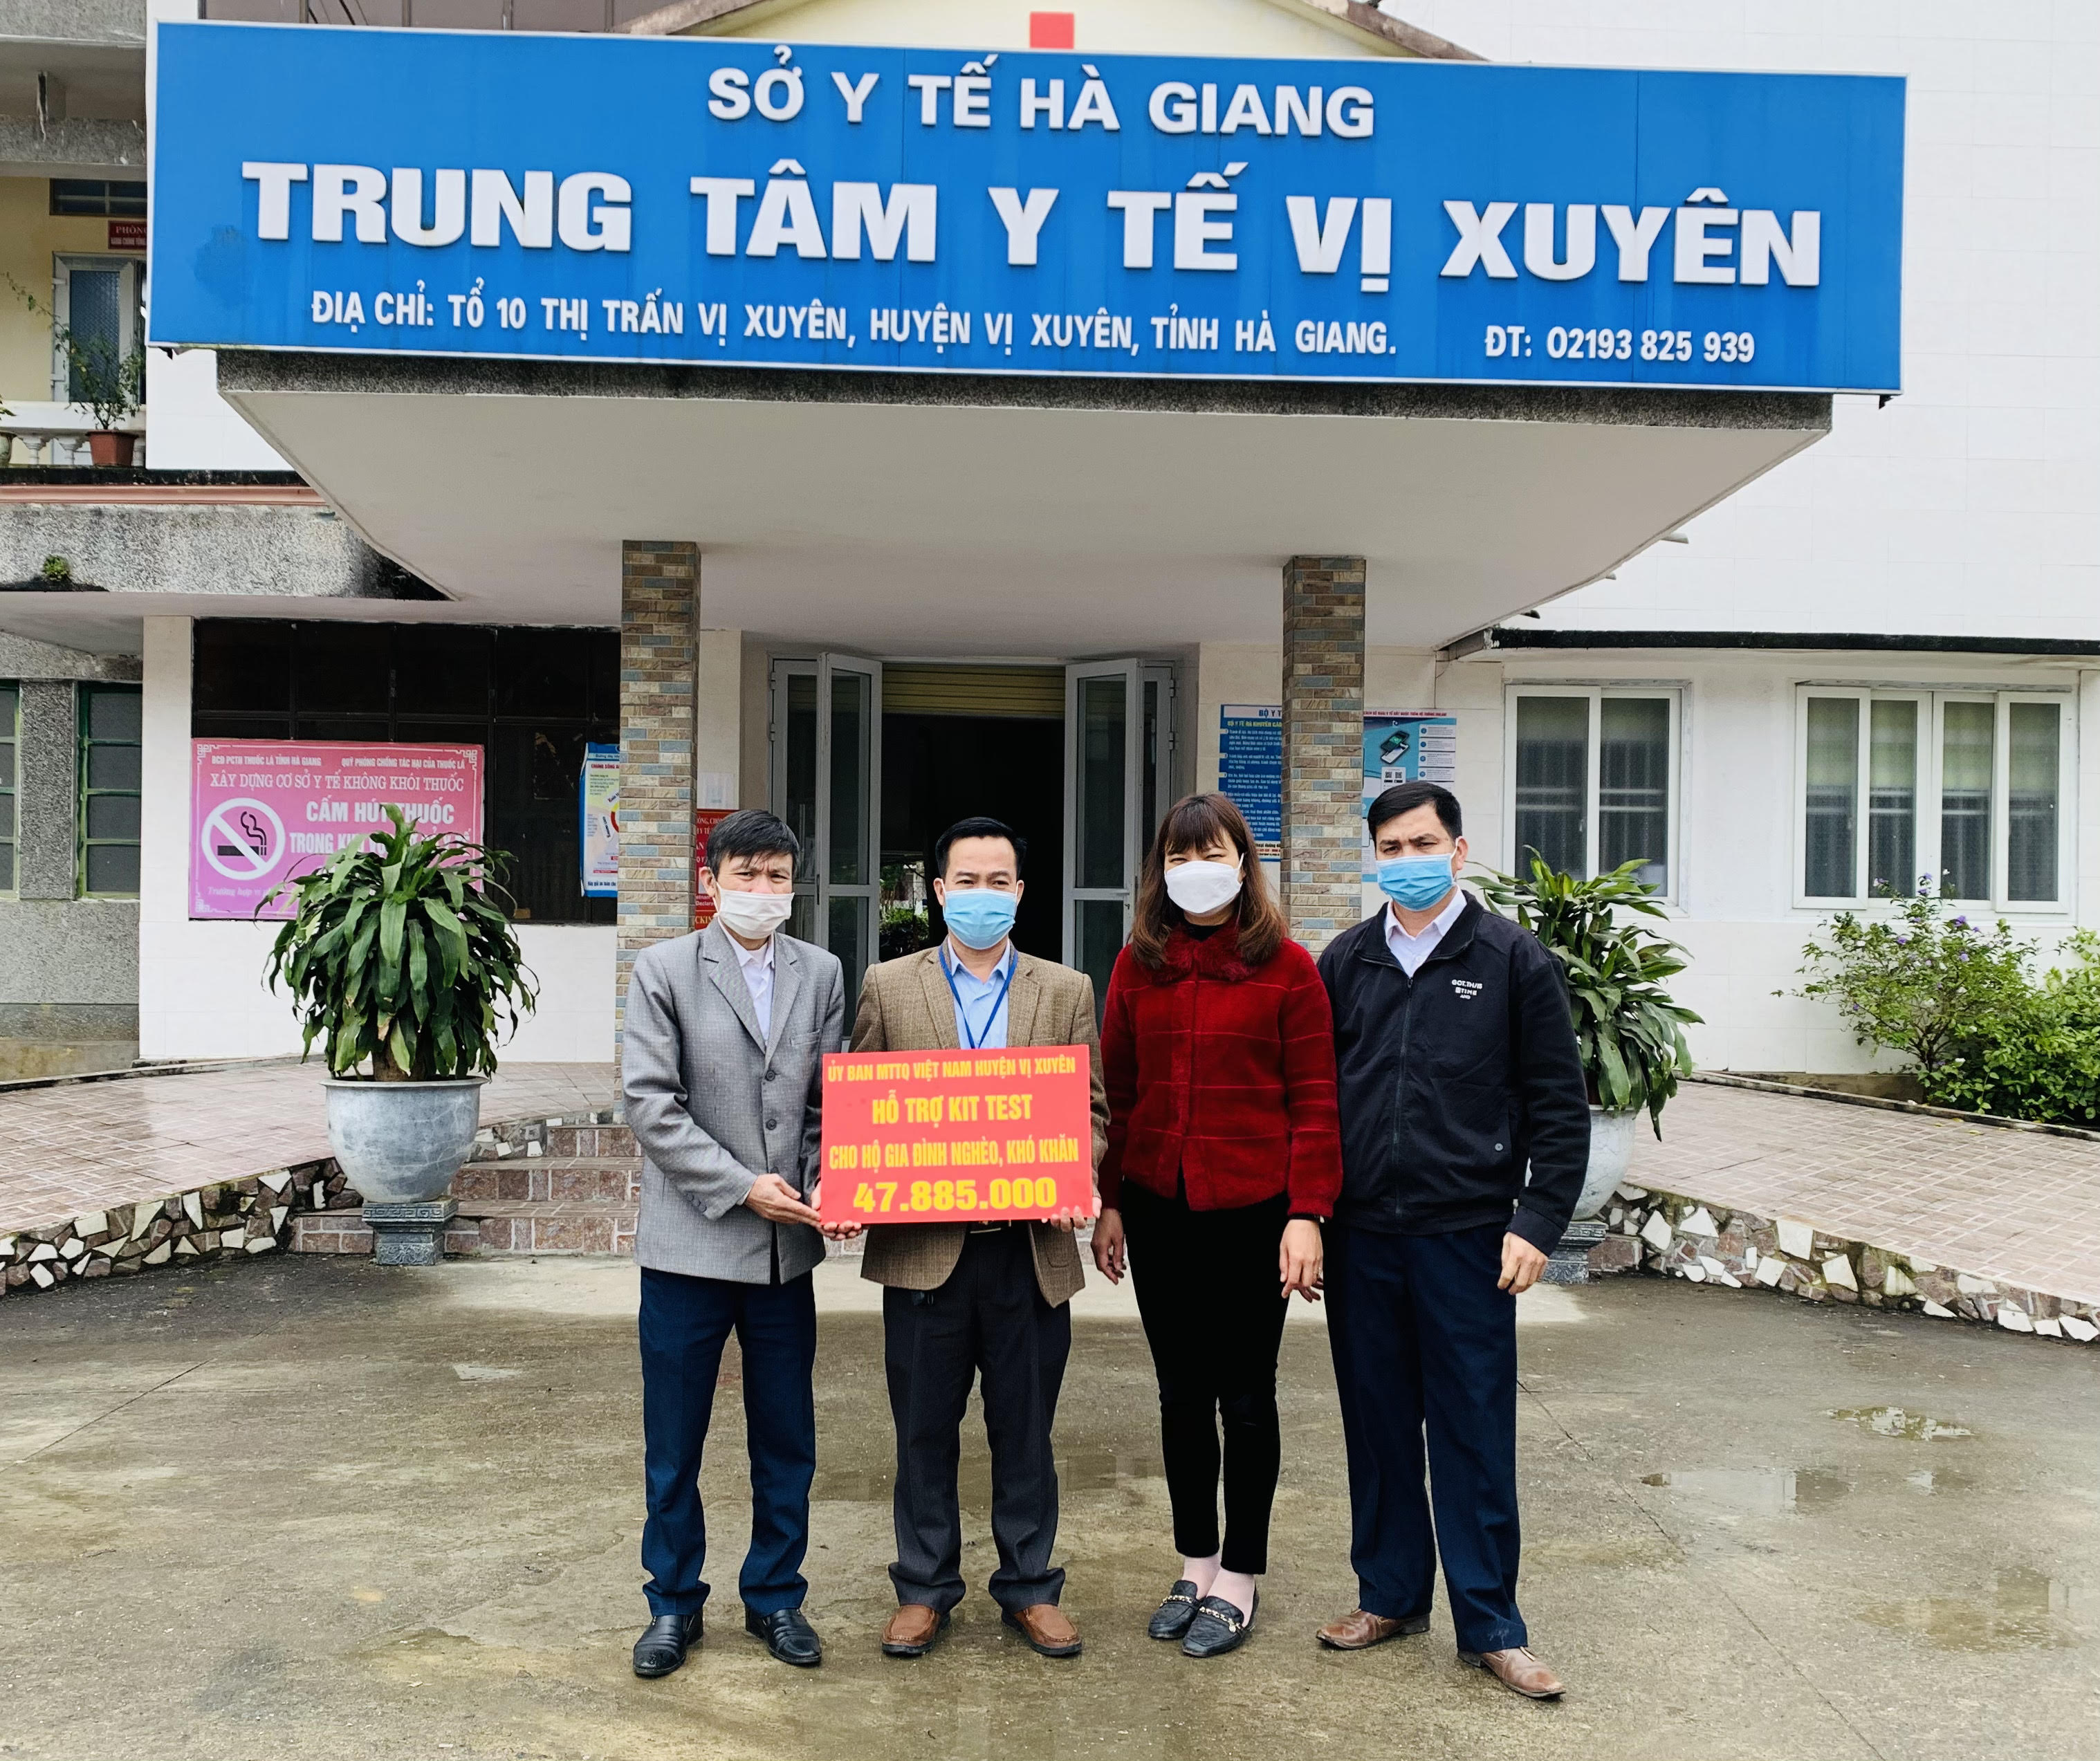 Mặt trận Tổ quốc Việt Nam huyện Vị Xuyên tặng quà Trung tâm Y tế